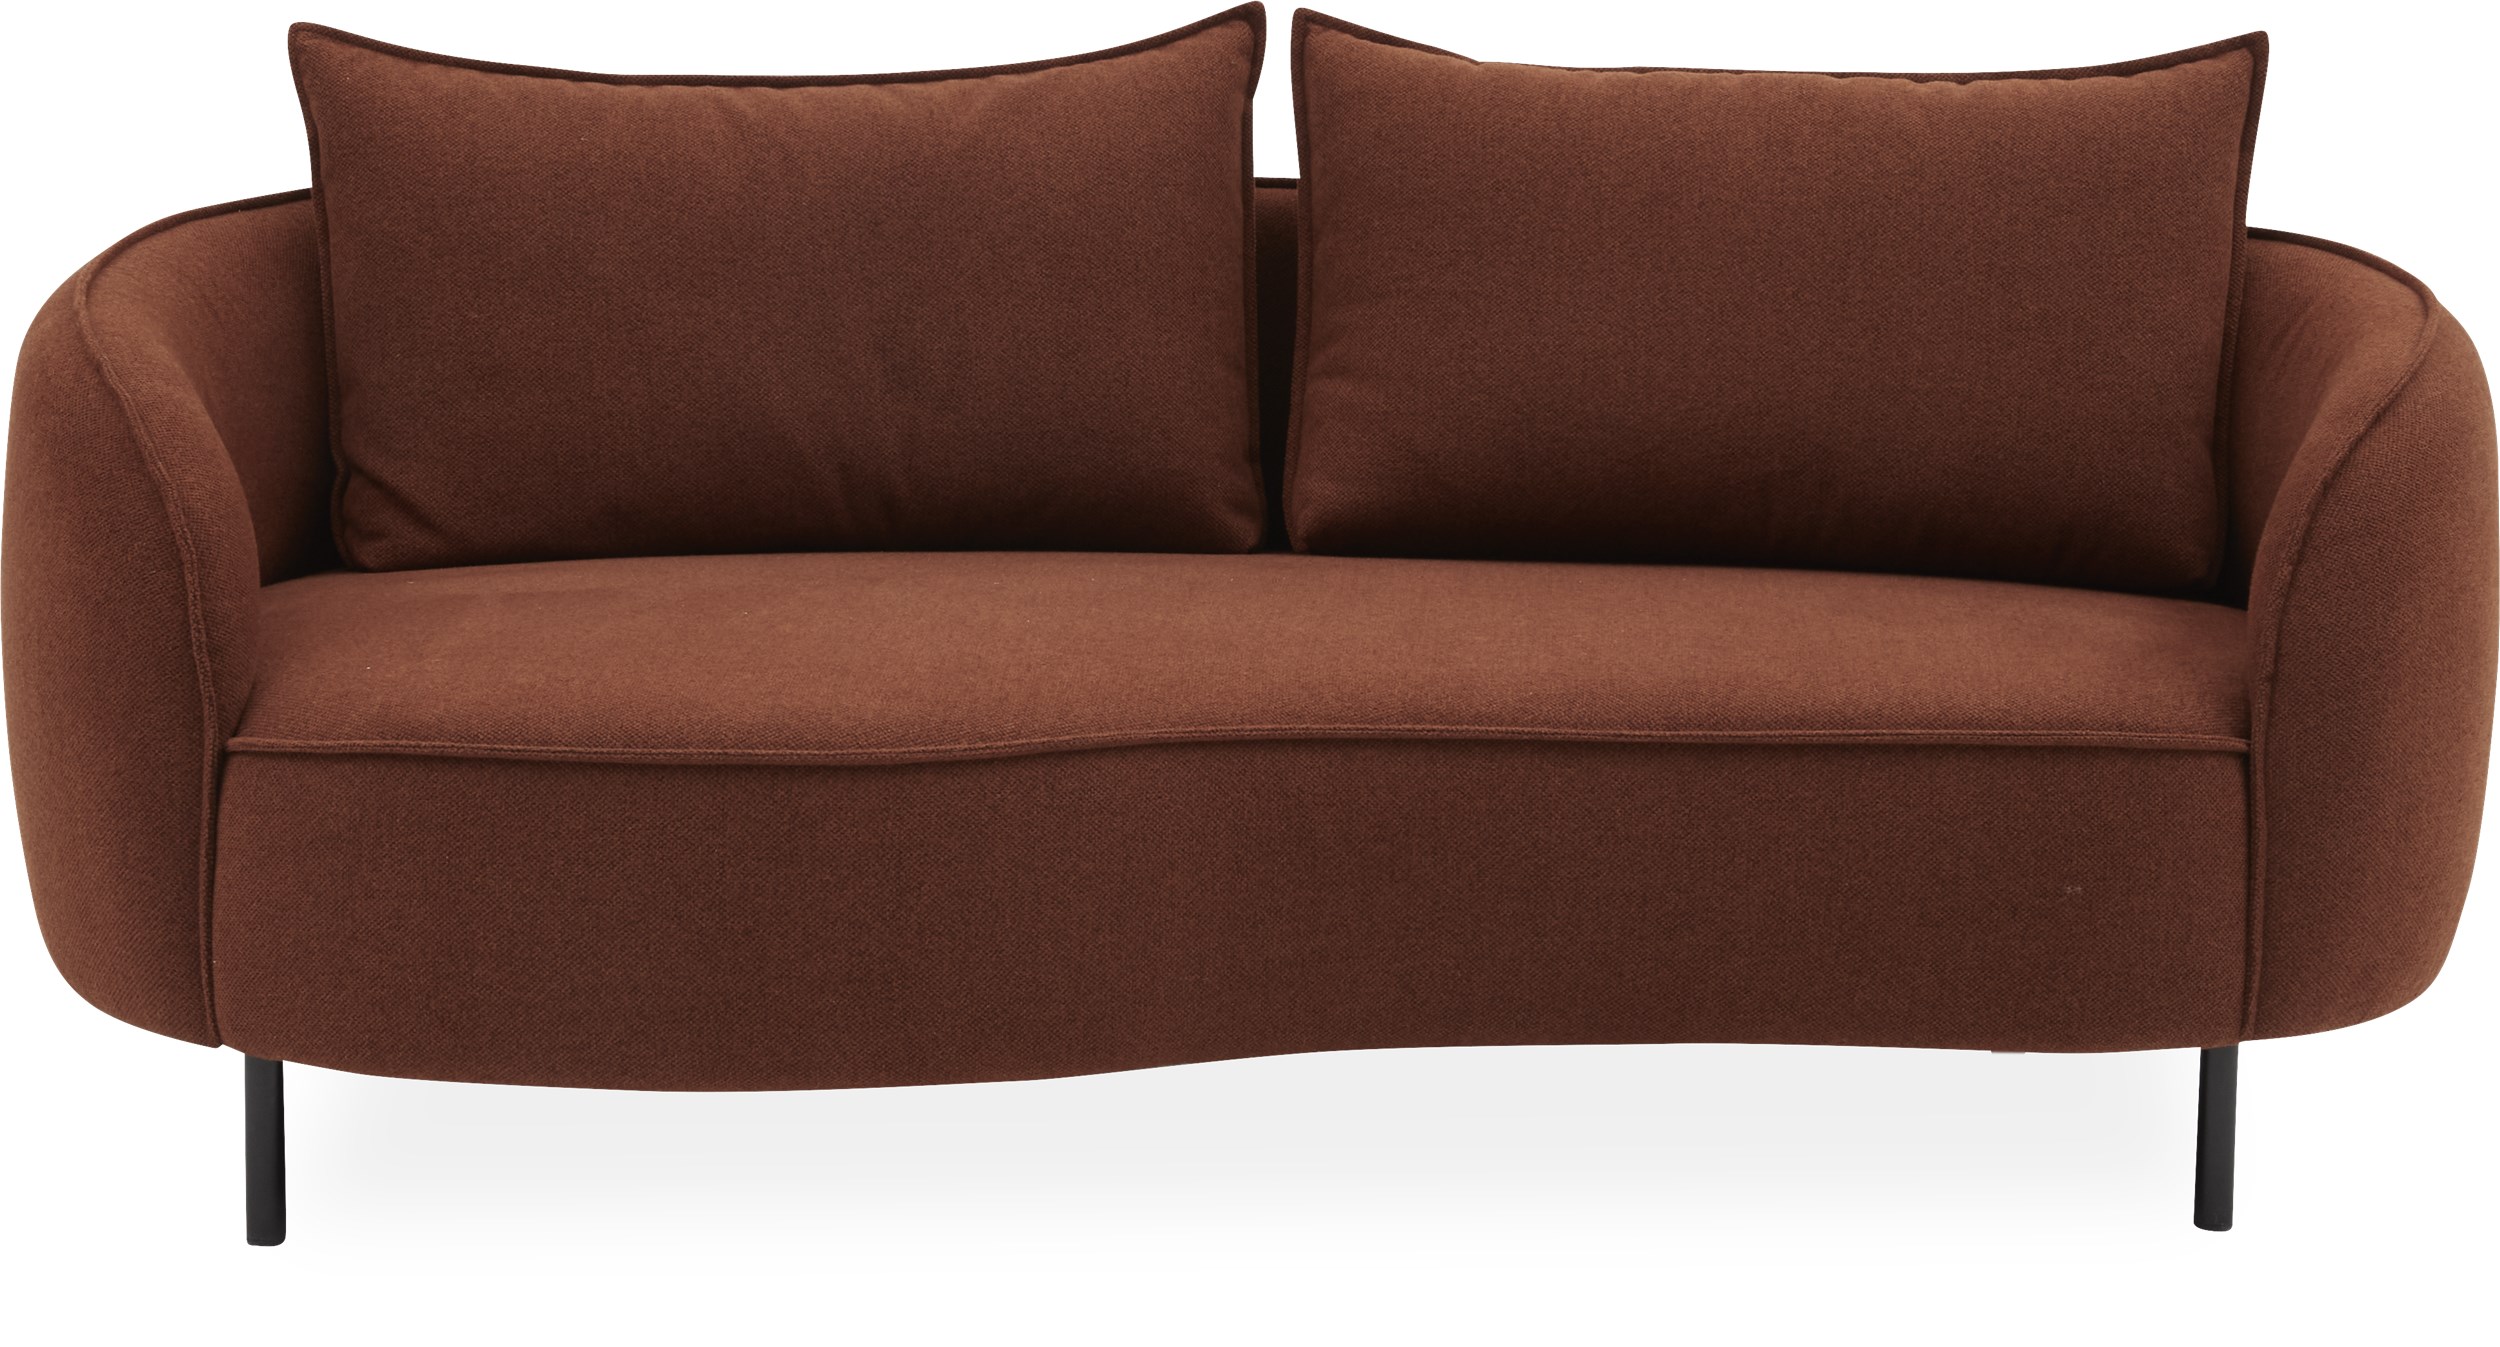 Heim 2½ pers. Sofa - Denno 1265 Rusty Orange stof og ben i sortlakeret metal